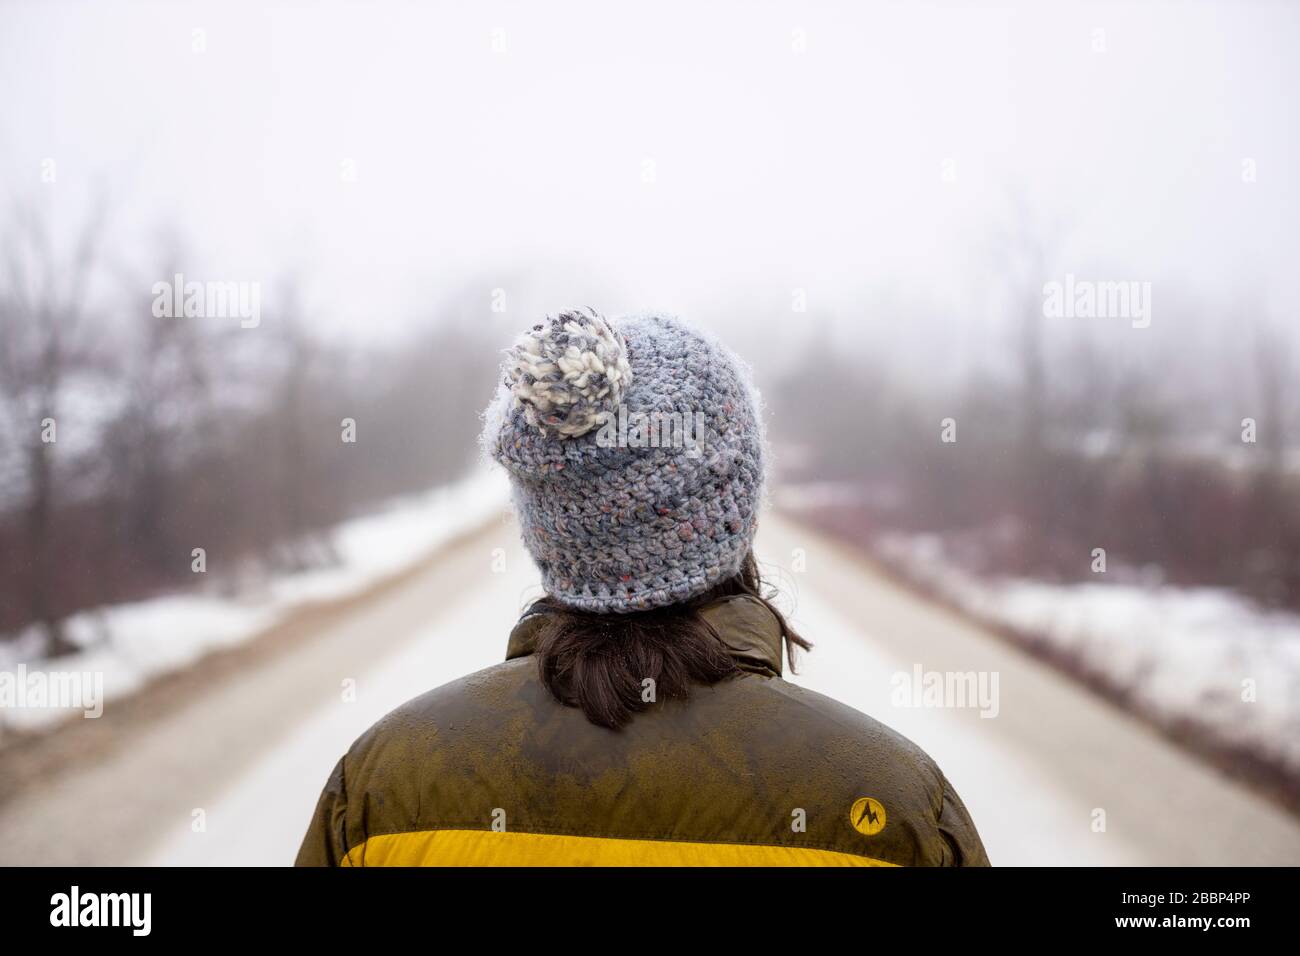 Une dame marche seule sur une route de gravier pendant la réglementation d'urgence concernant le coronavirus / COVID-19, sur une journée de printemps froid brumeuse. Banque D'Images